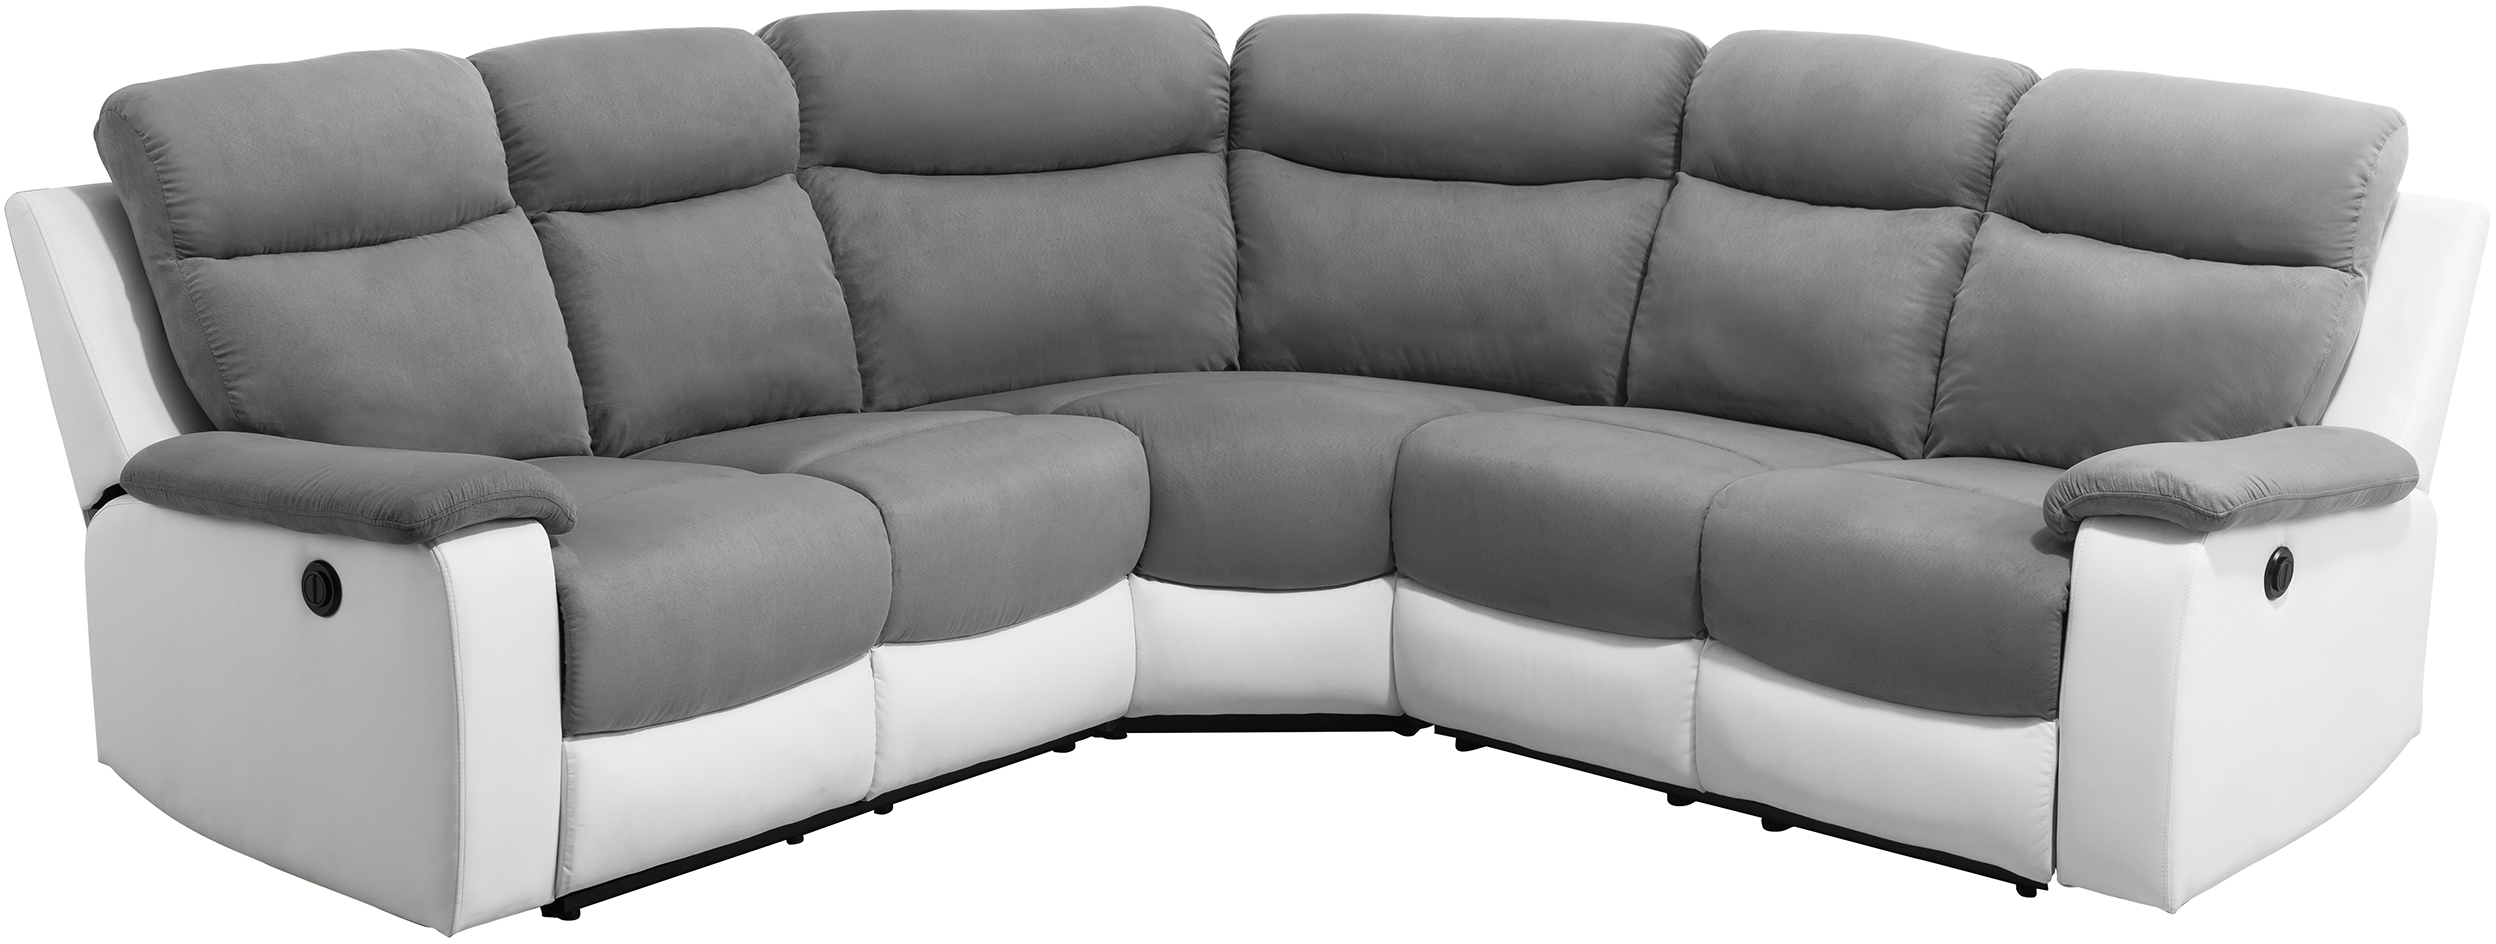 Canapé de relaxation électrique panoramique 6 places en microfibre et simili - Blanc/gris